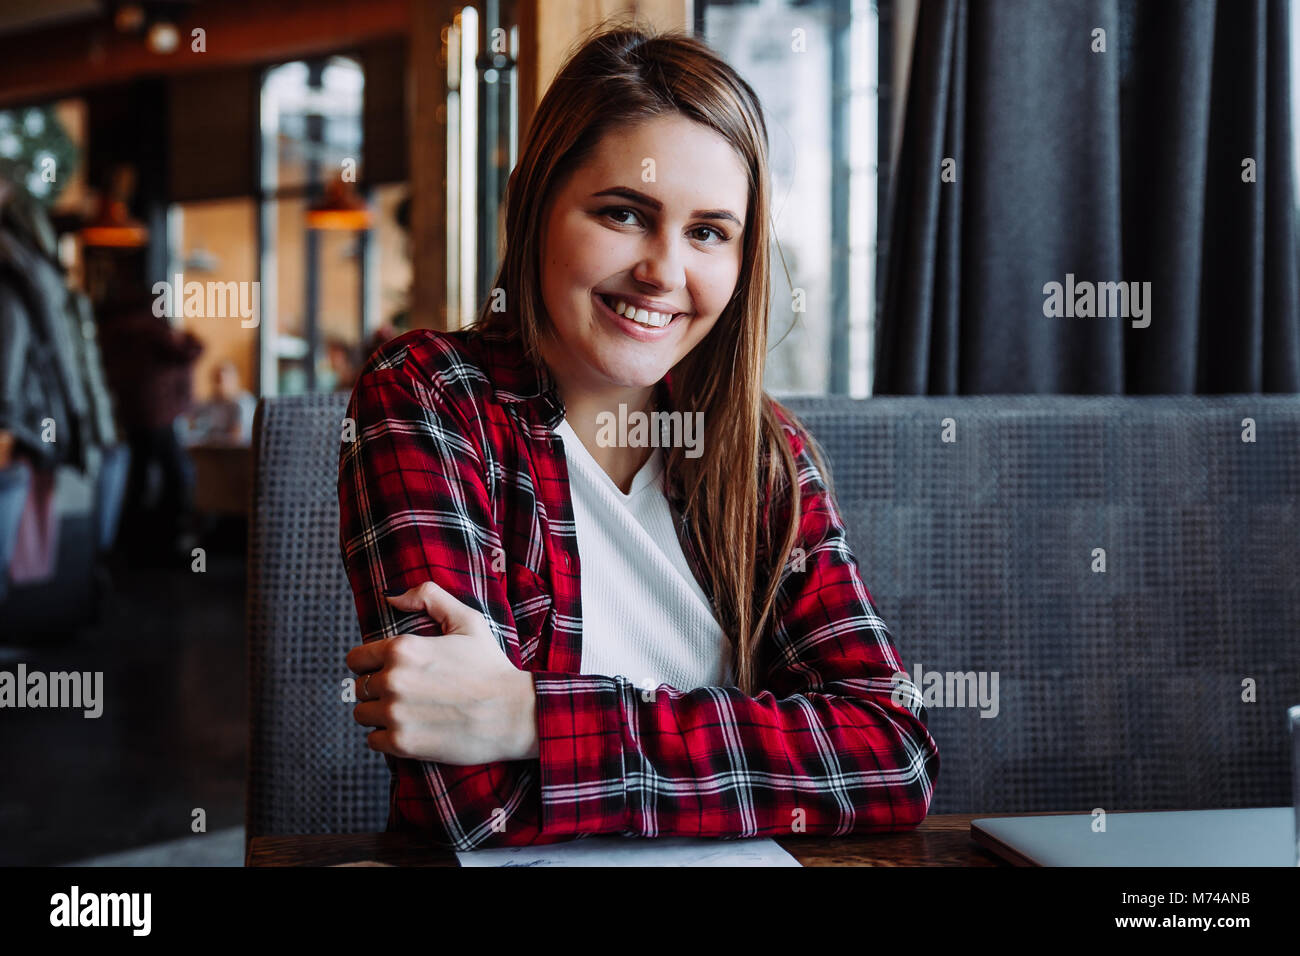 Belle brunette smiling at camera sitting in cafe Banque D'Images